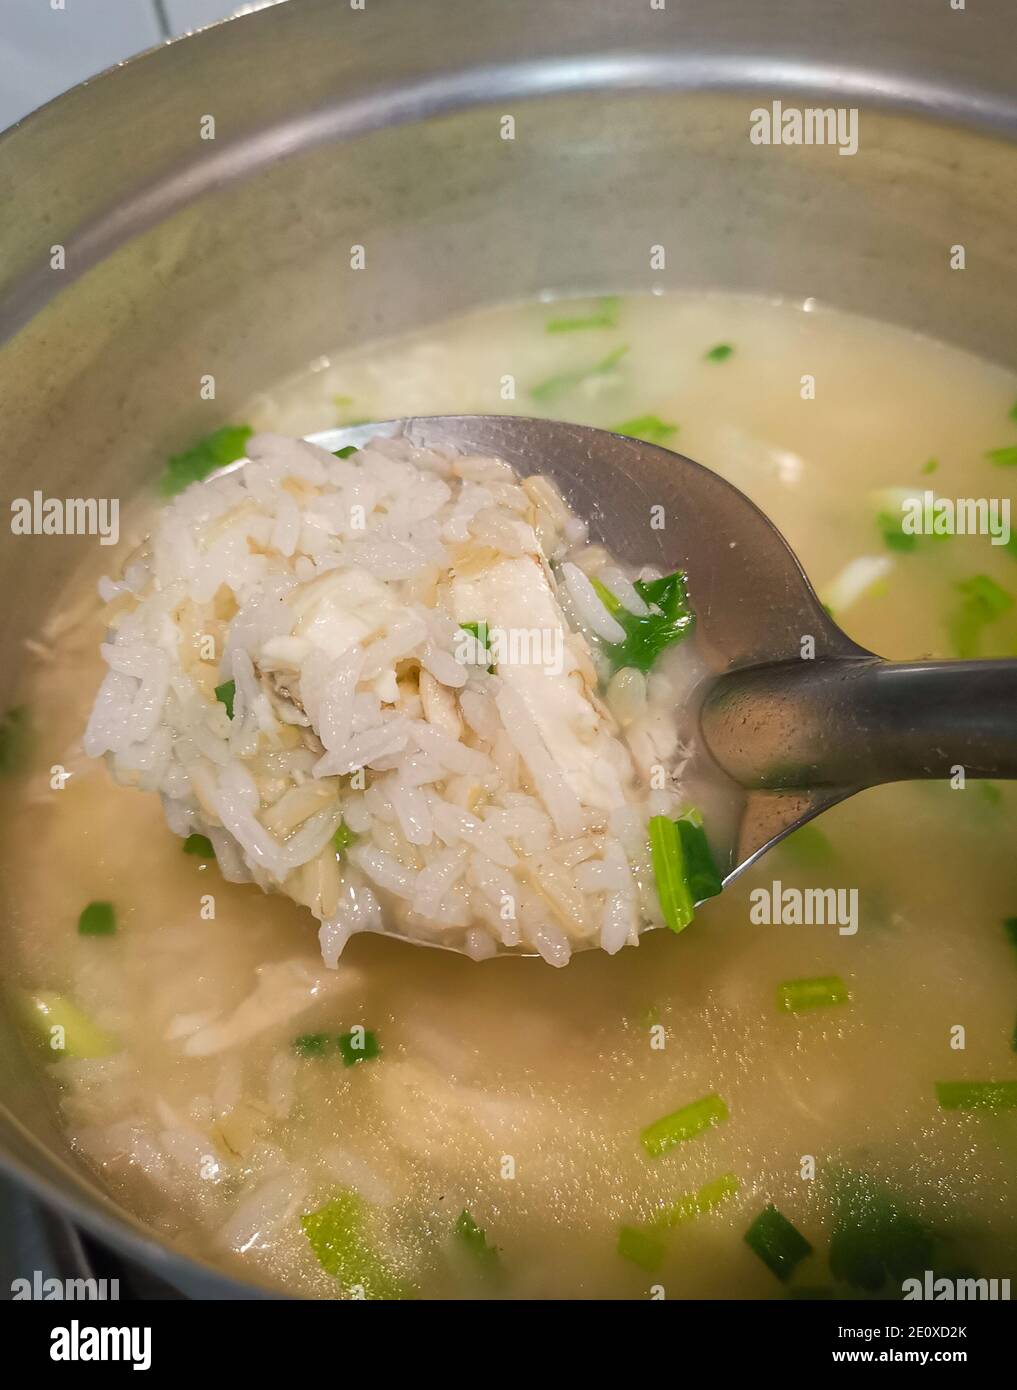 Porridge de poulet avec oignon de printemps dans une casserole de métal. Le processus de fabrication de la nourriture de petit déjeuner thaï Banque D'Images